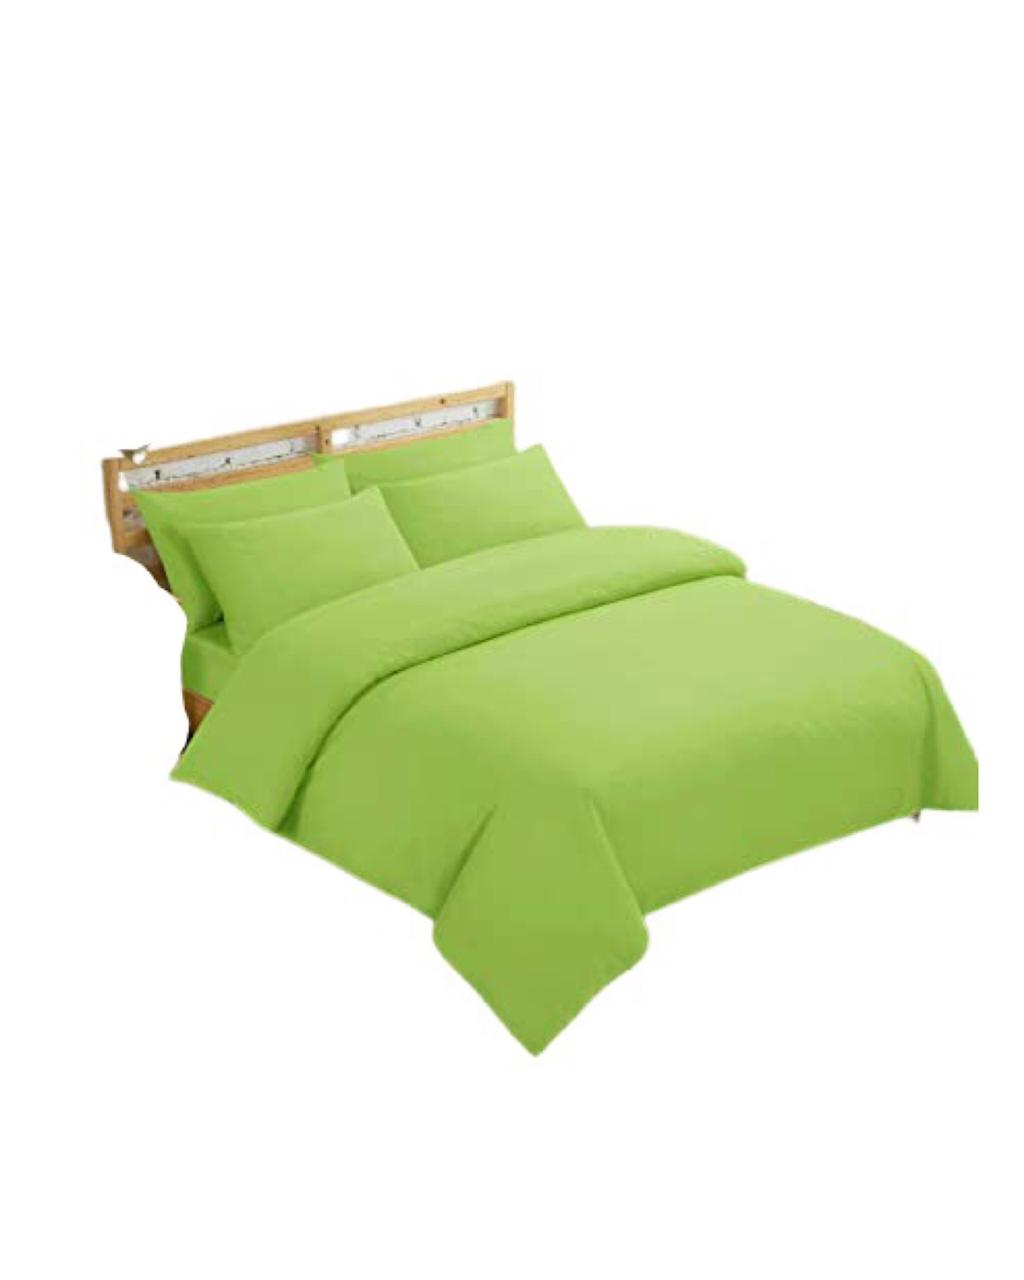 Double Duvet Cover Set - Plain Color Green